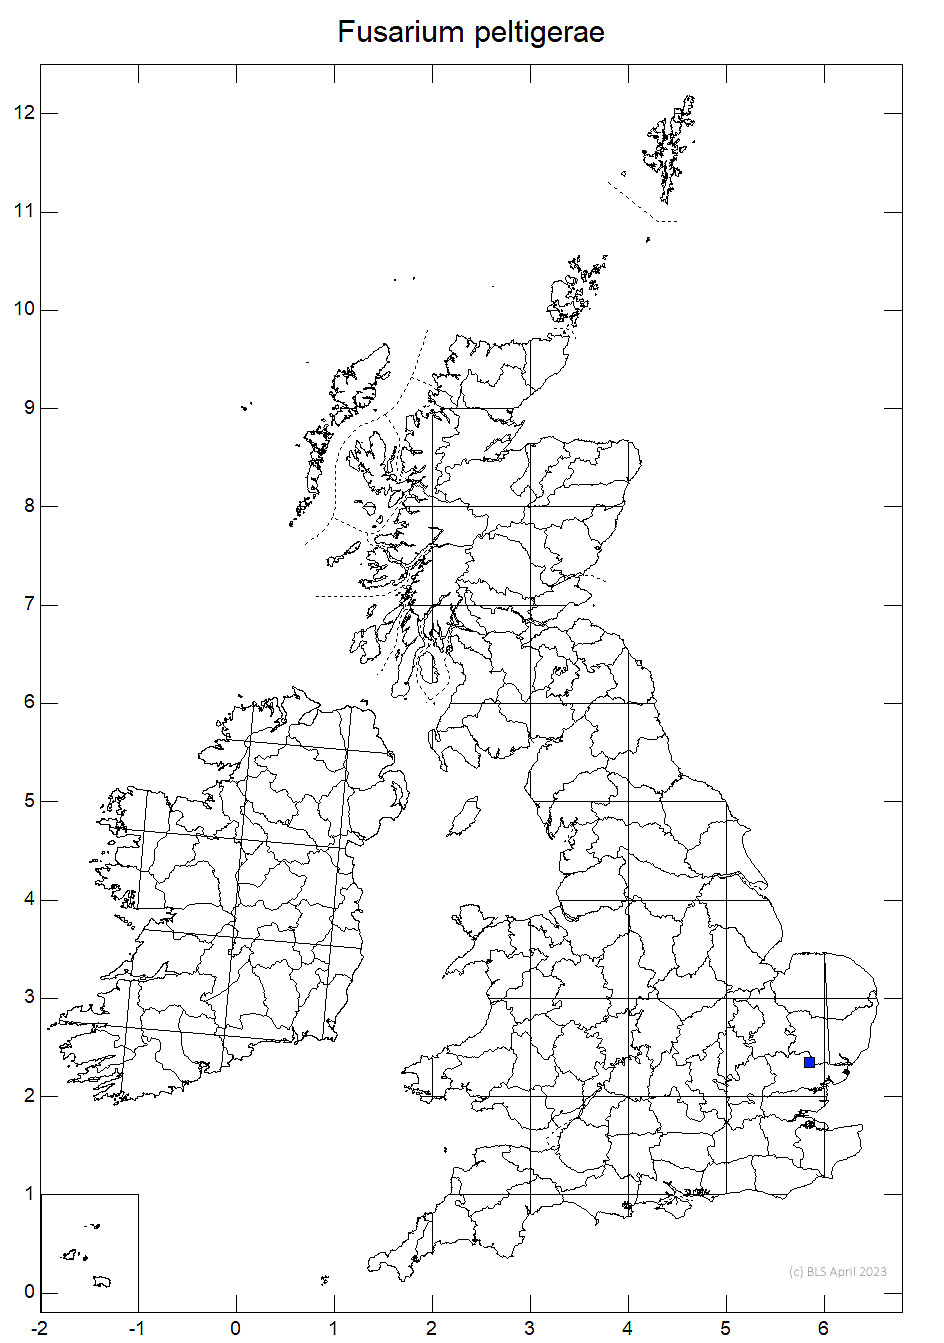 Fusarium peltigerae 10km sq distribution map